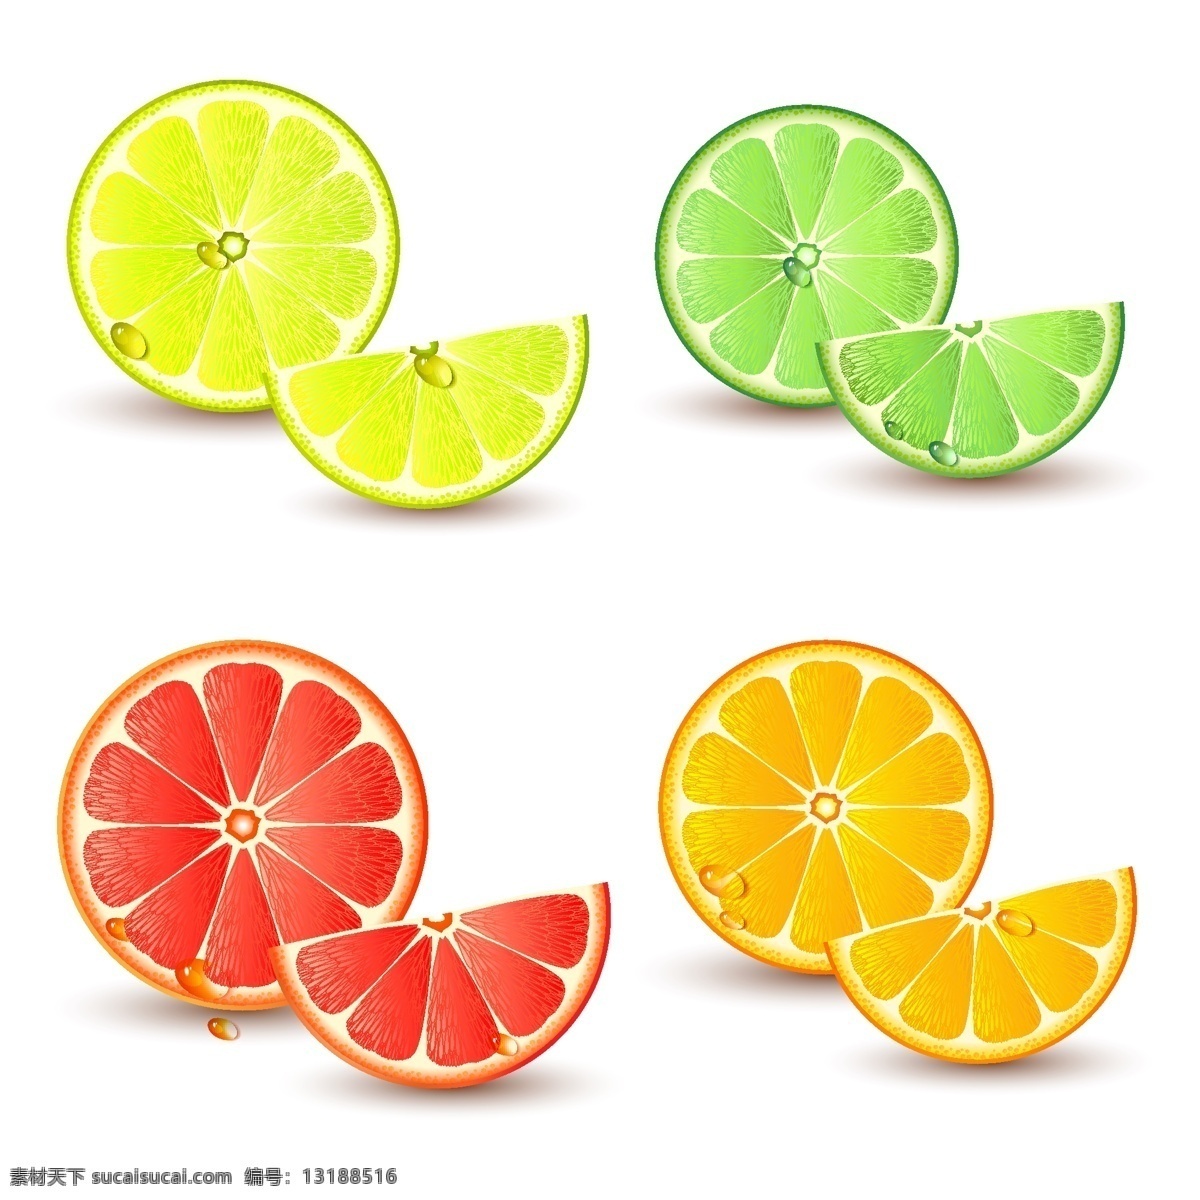 橙子 橙汁 柑橘 桔子 生物世界 矢量素材 水果 新鲜 新鲜水果 橙子矢量素材 橙子模板下载 西柚 矢量 矢量图 日常生活